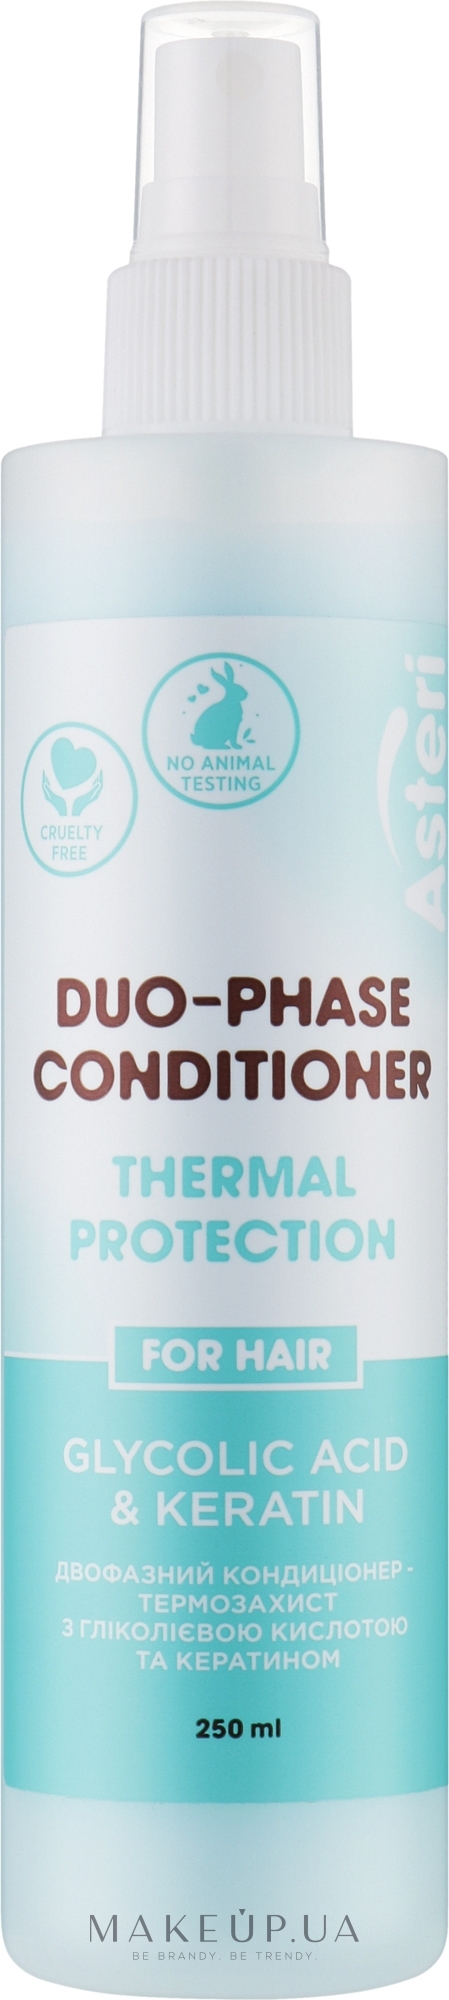 Двухфазный кондиционер для волос - Asteri Glycolic Acid & Keratin Duo-Phase Conditioner — фото 250ml